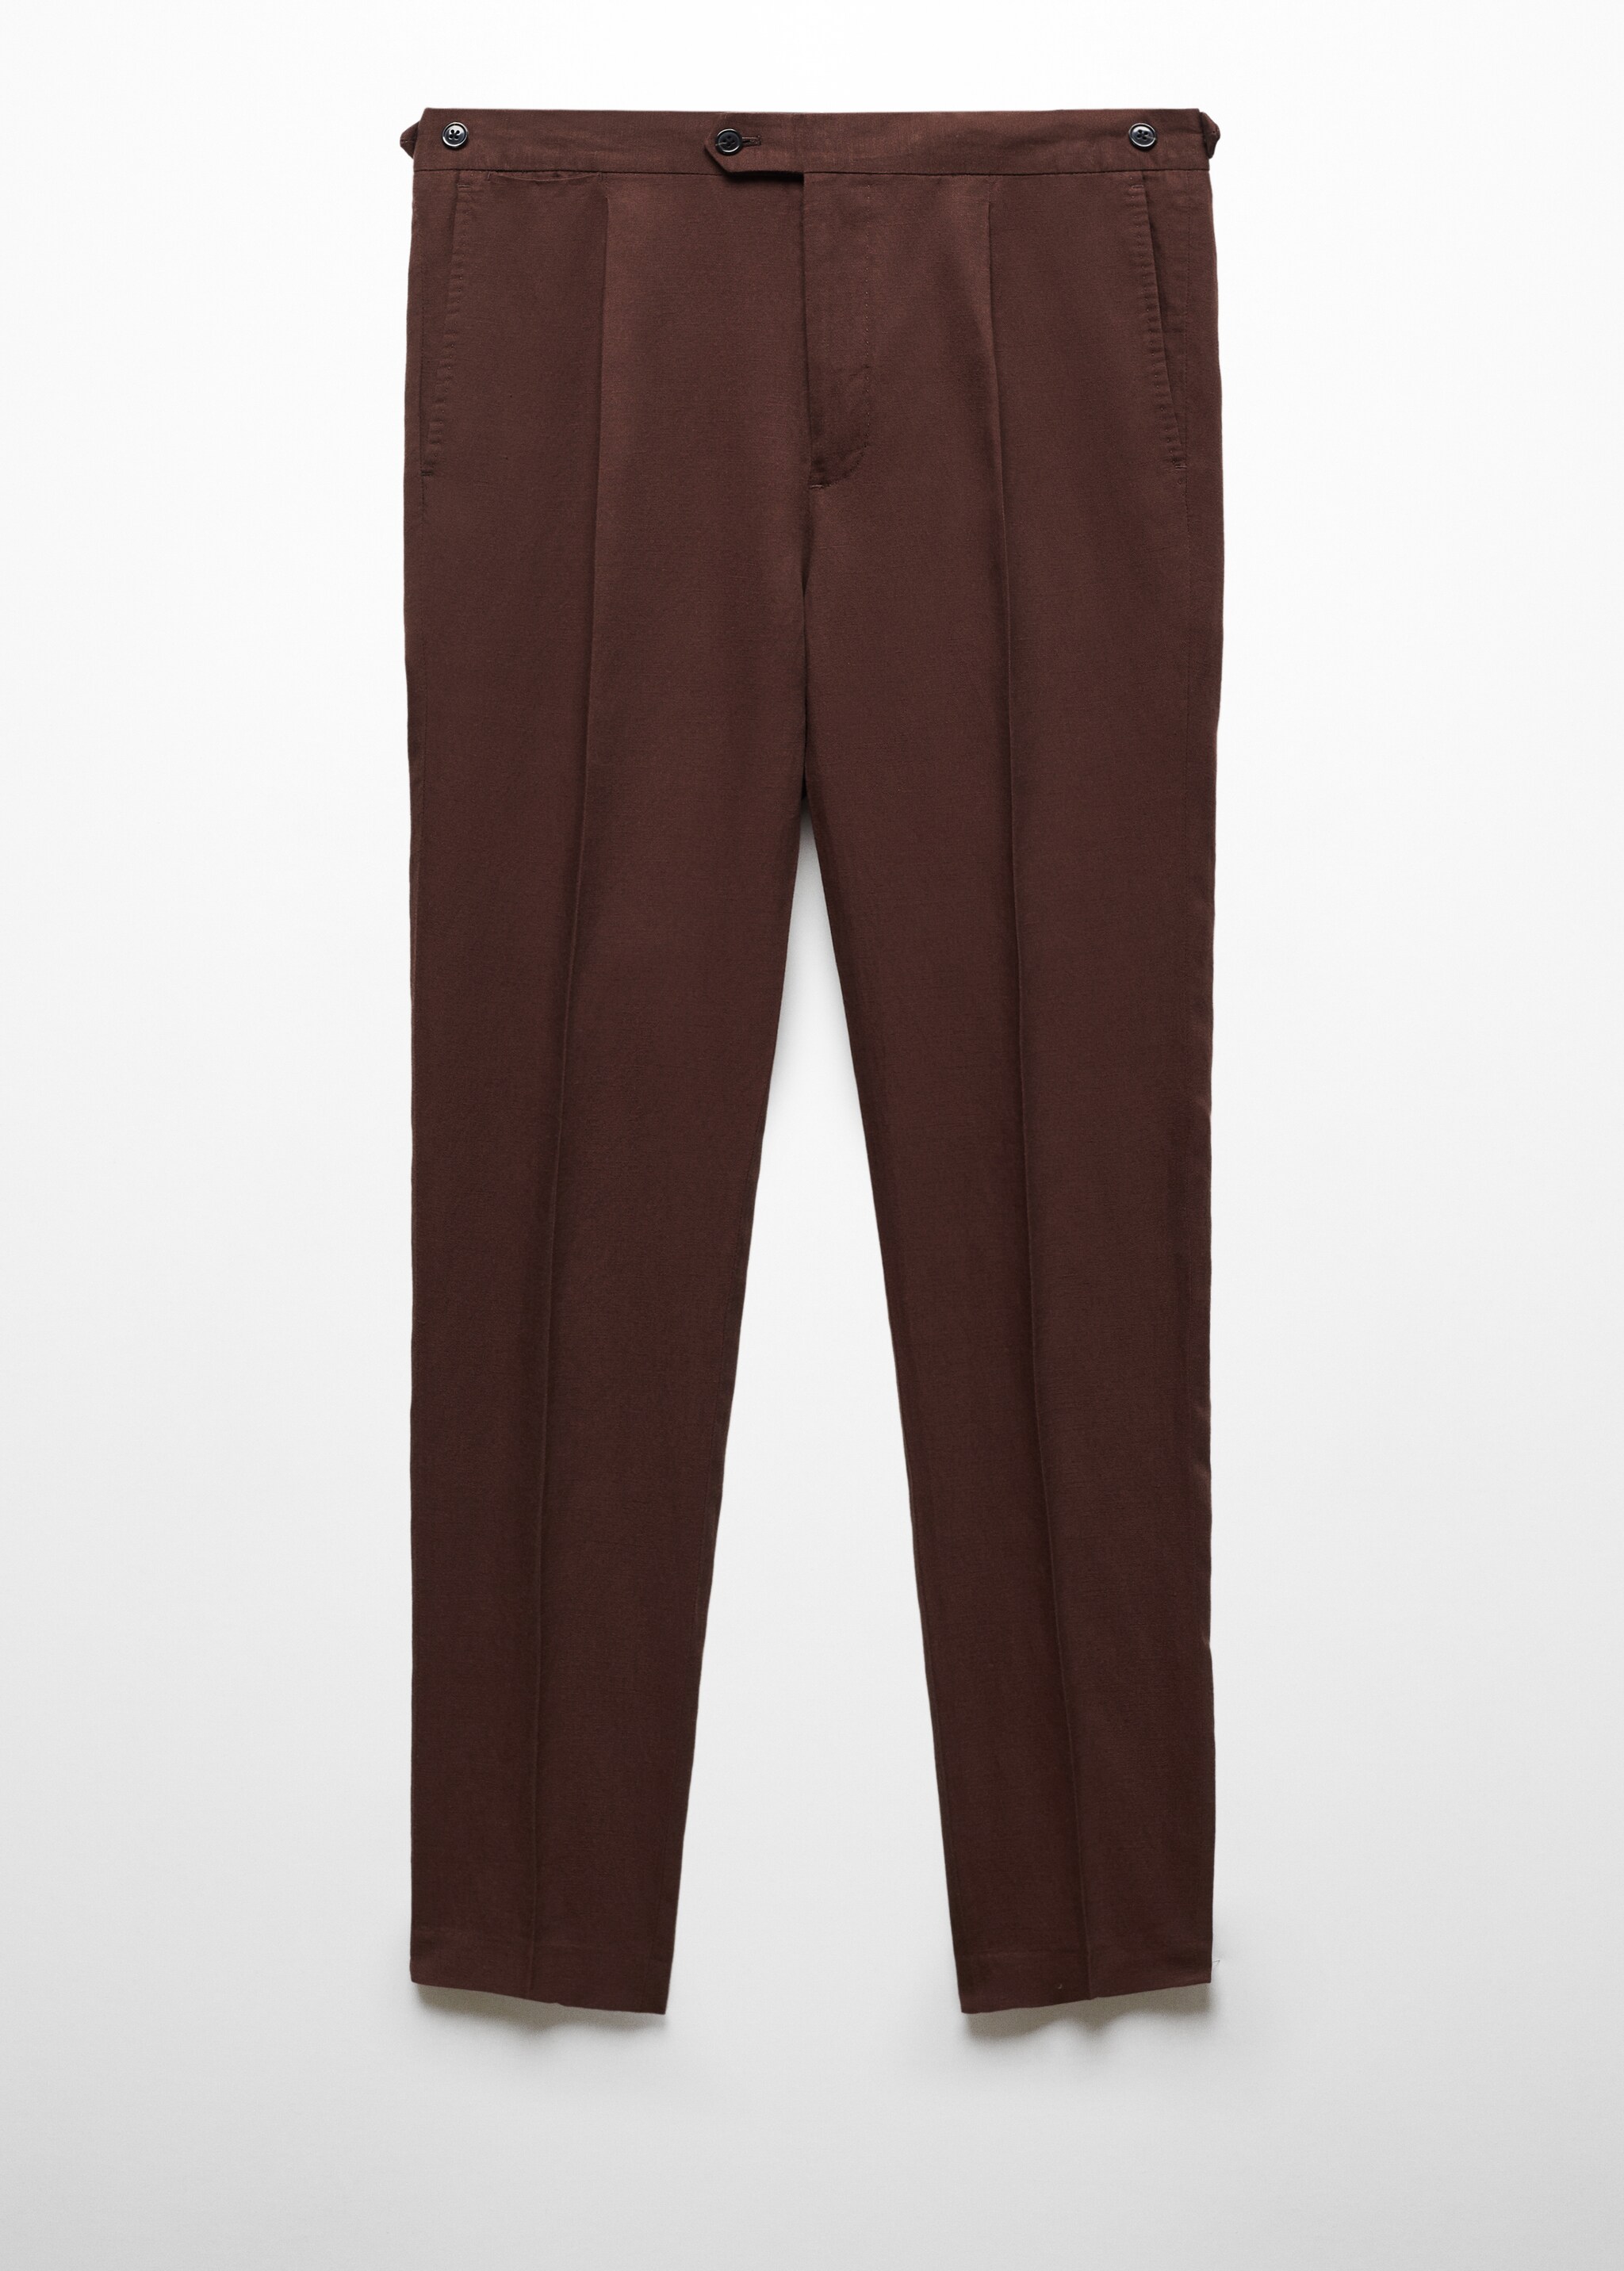 Spodnie garniturowe lniane slim fit z zaszewkami - Artykuł bez modela/modelki